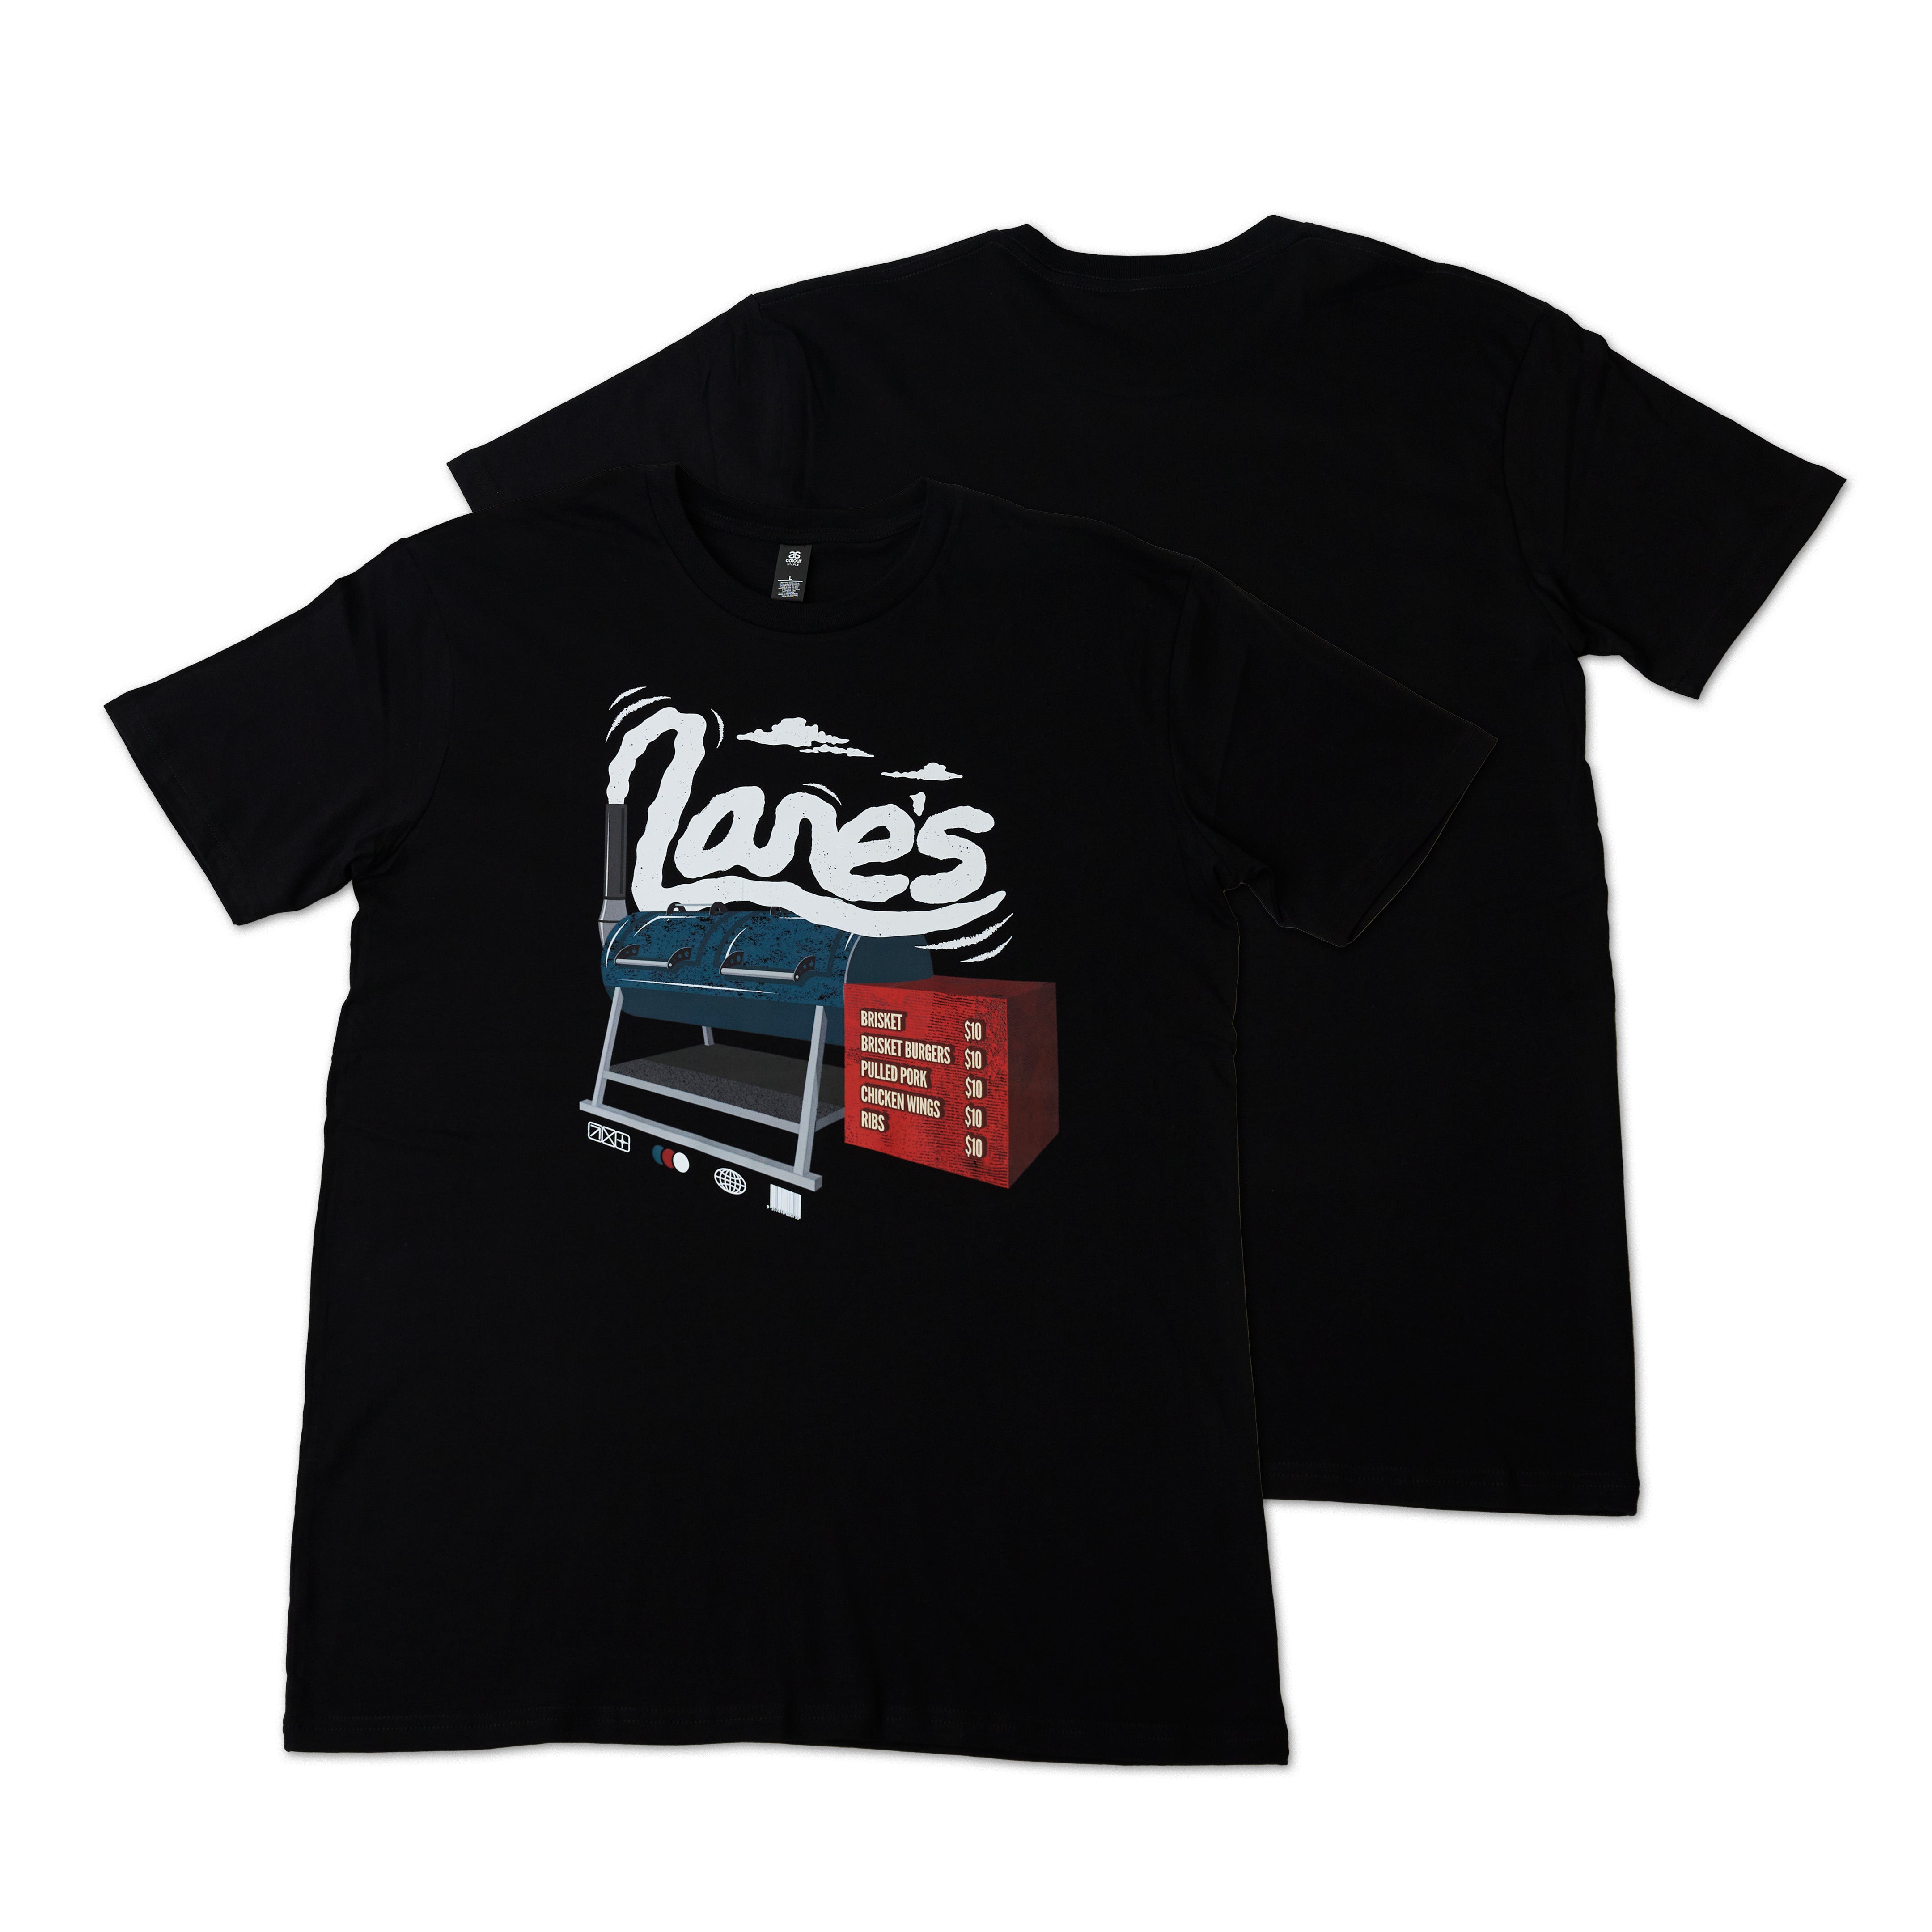 Lanes Smoker T Shirt - Black